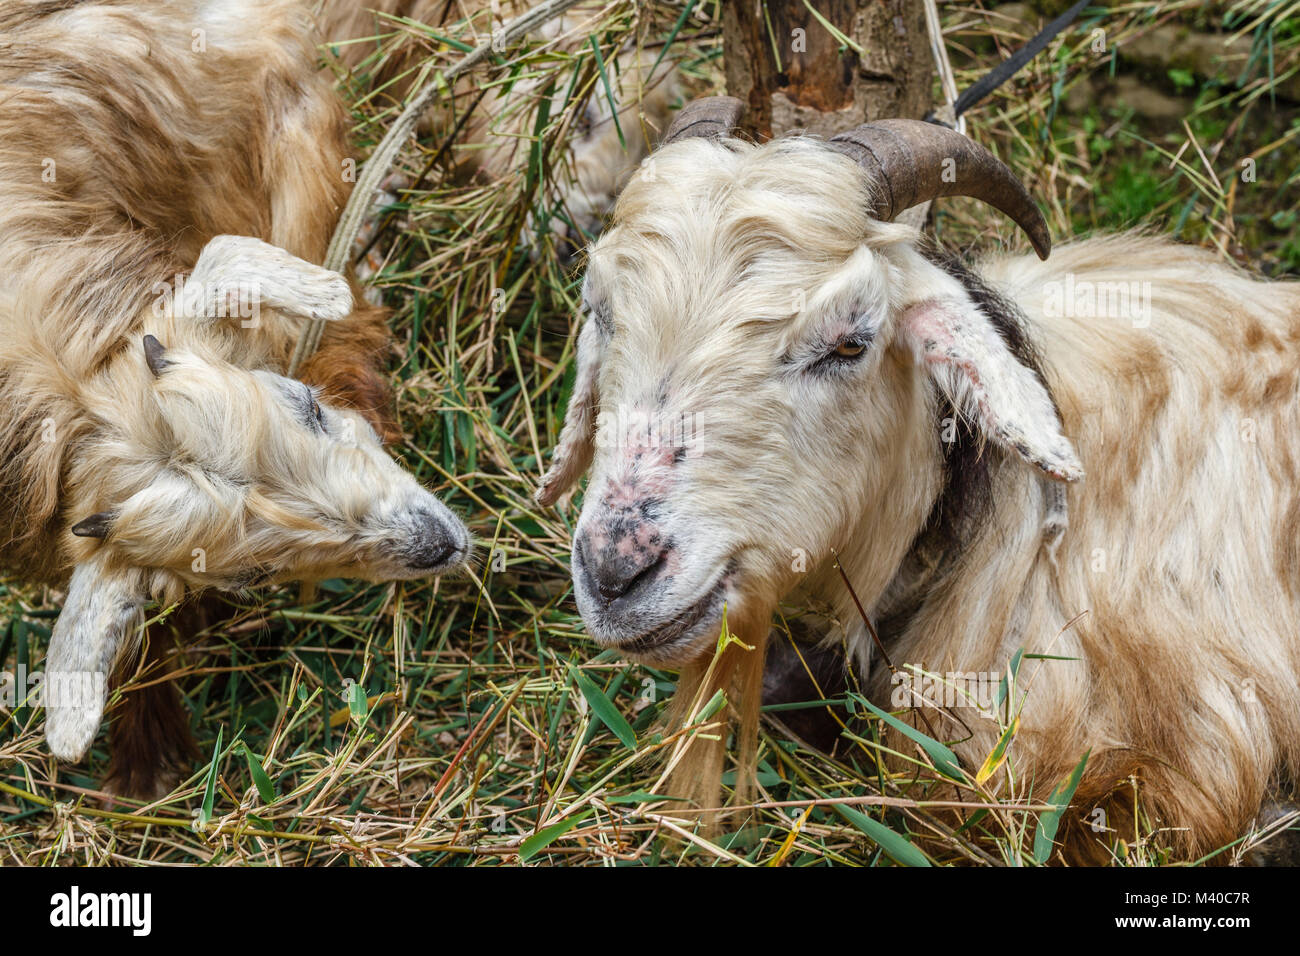 Ovejas (oveja y su cordero) comiendo hierba en el pueblo de montaña en el Himalaya, Nepal. Imagen de retrato. Foto de stock